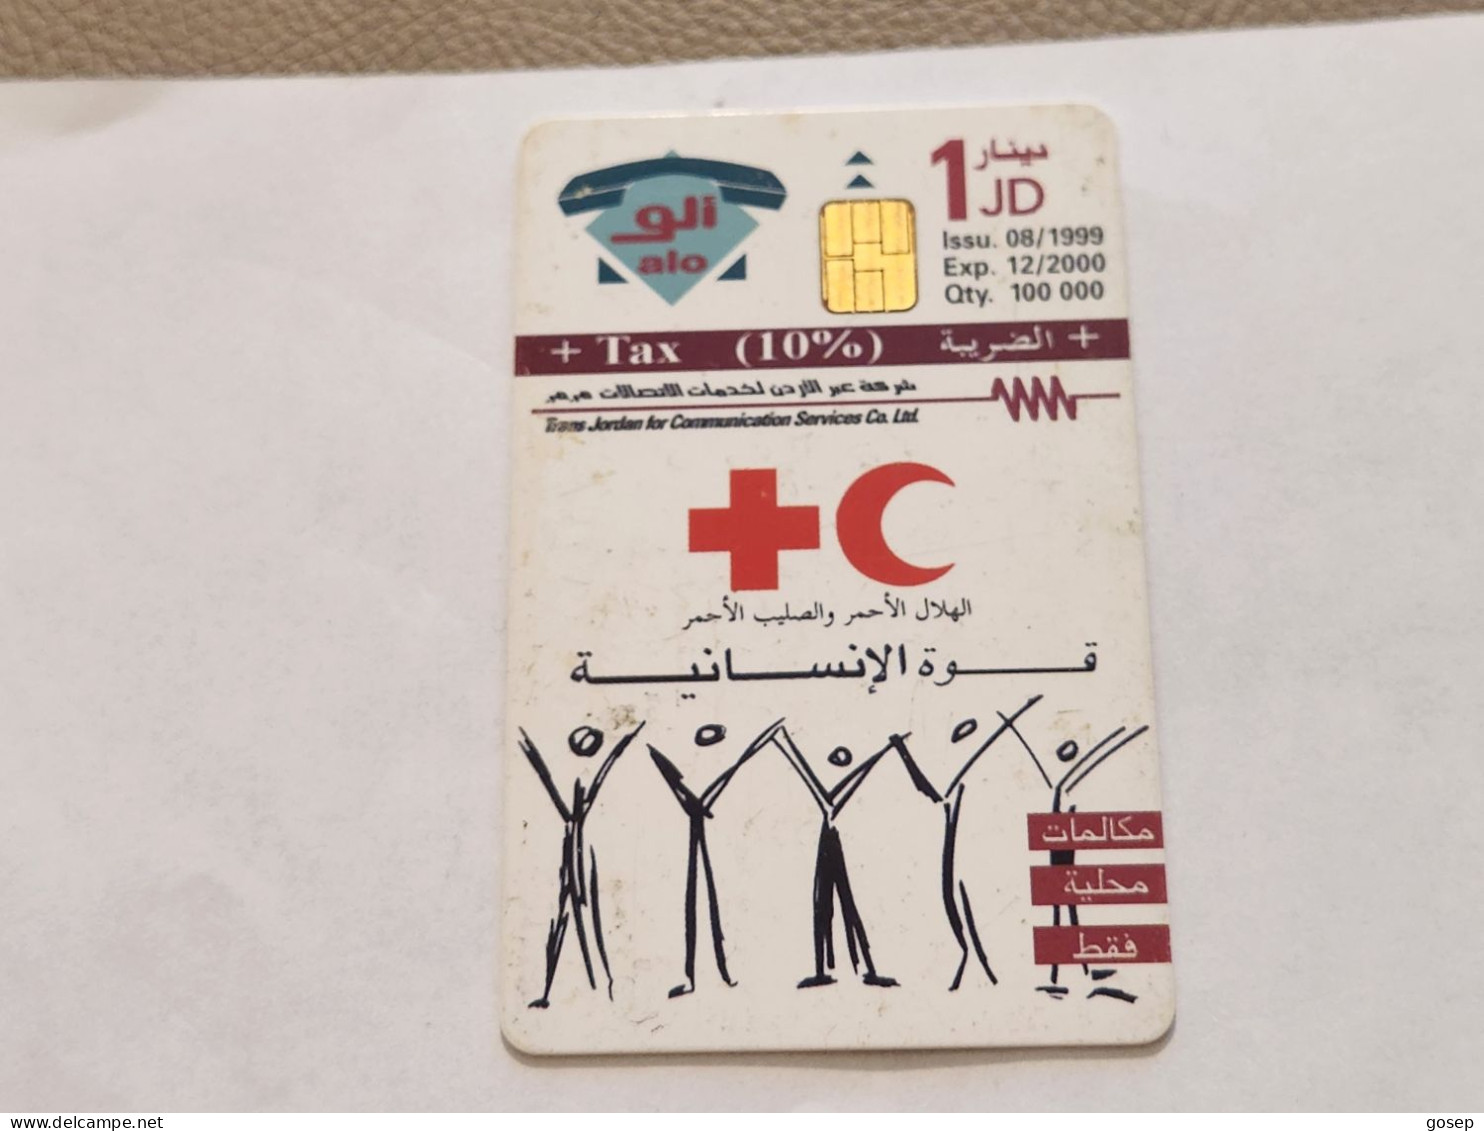 JORDAN-(JO-ALO-0056)-Red Cross-(176)-(1002-625125)-(1JD)-(12/2000)-used Card+1card Prepiad Free - Jordanien